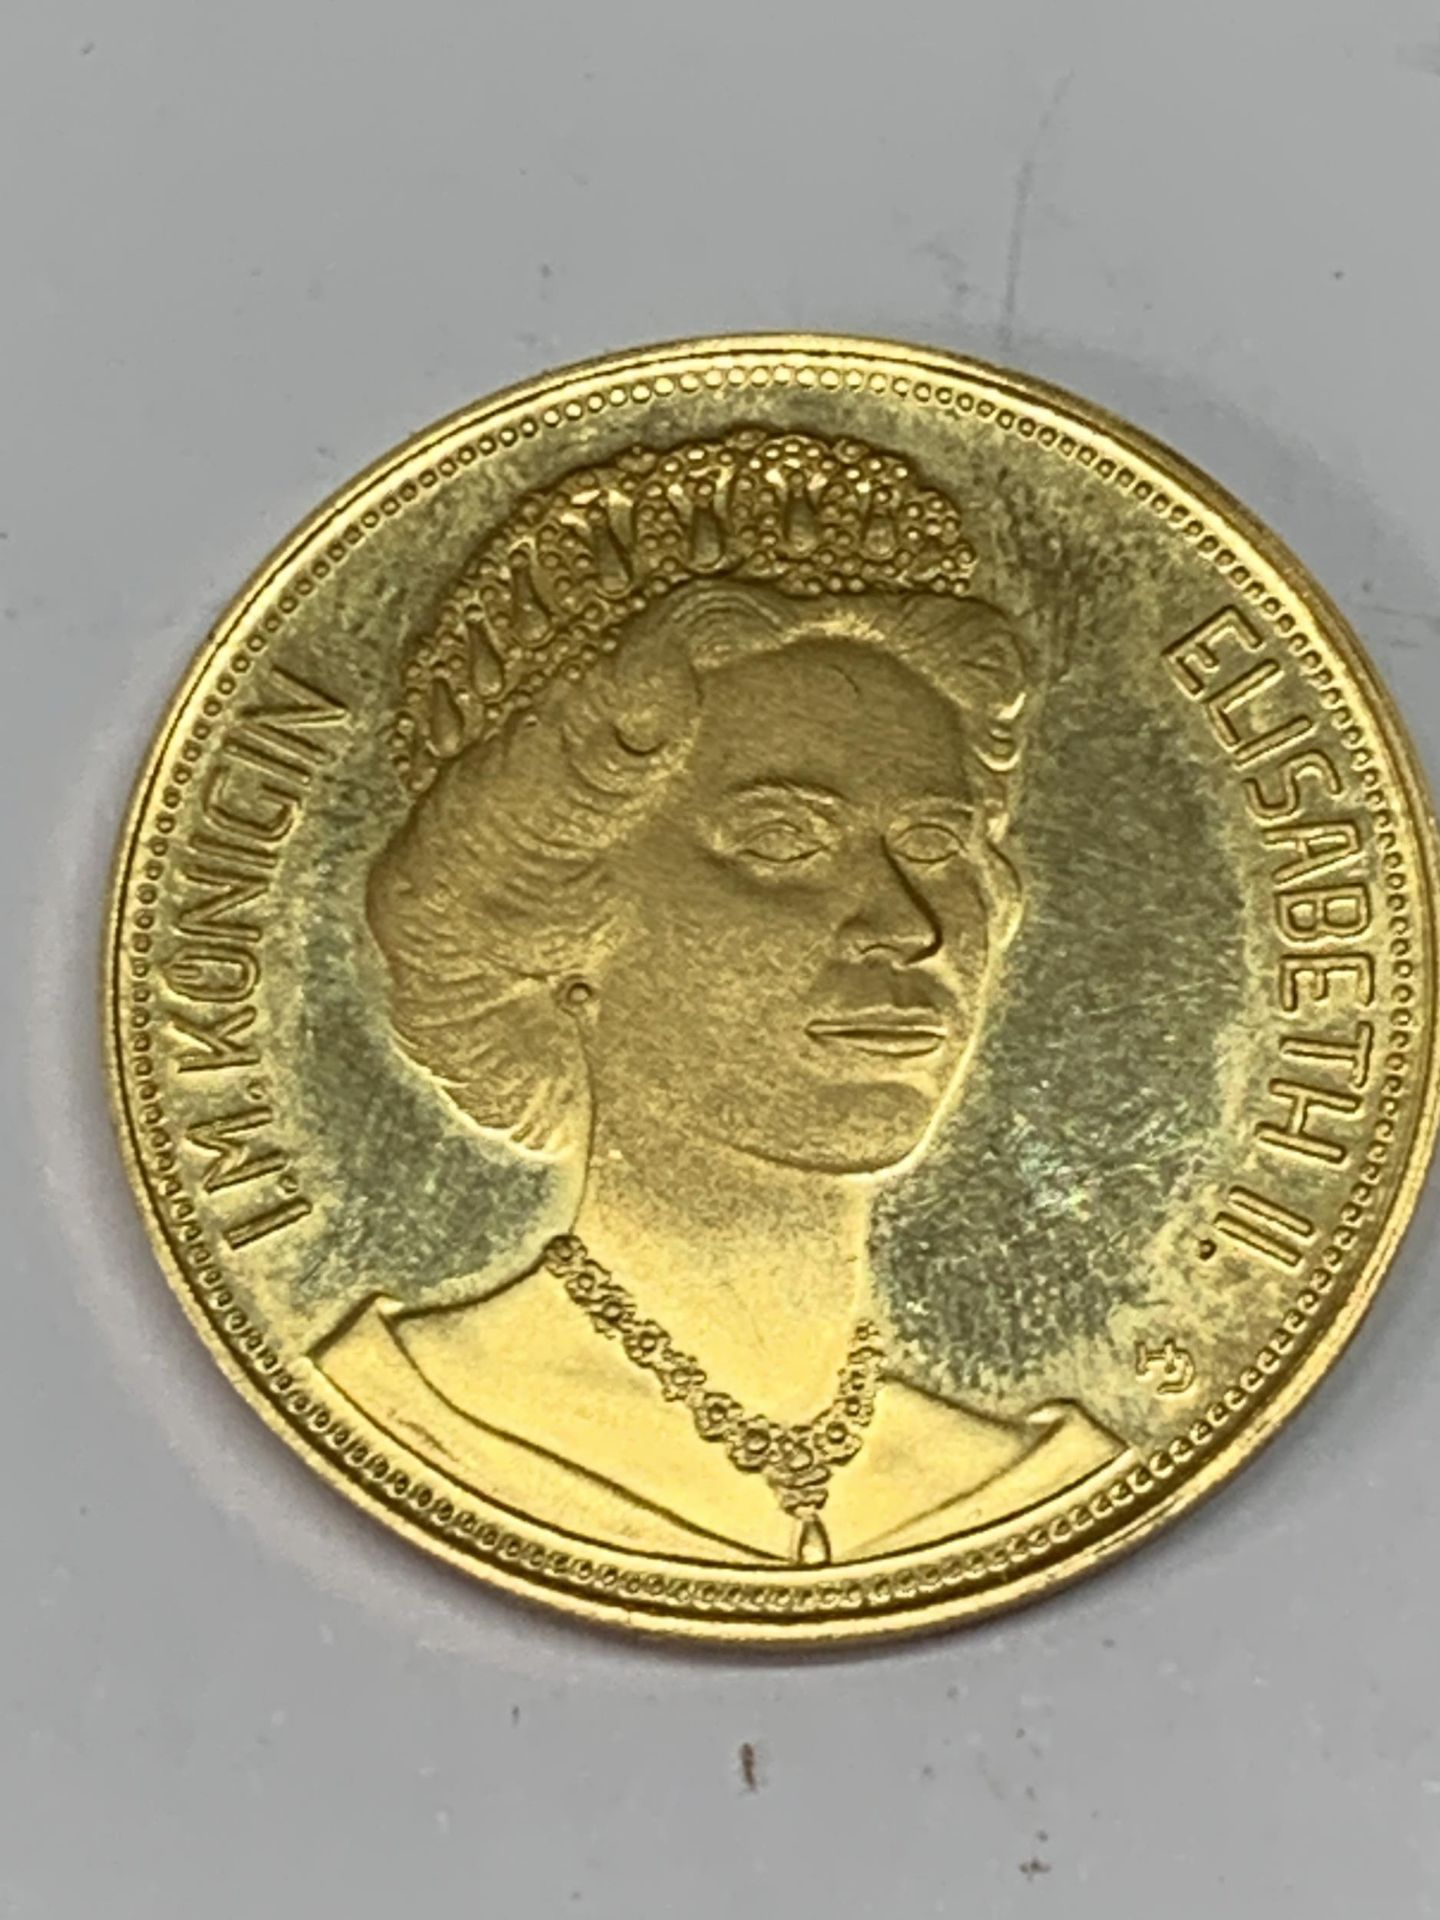 AN IM CONKIGIN ELIZABETH II COMMEMORATIVE 21.6 CARAT GOLD COIN MARKED ZUR ERINNERUNG AN DEN - Image 2 of 2